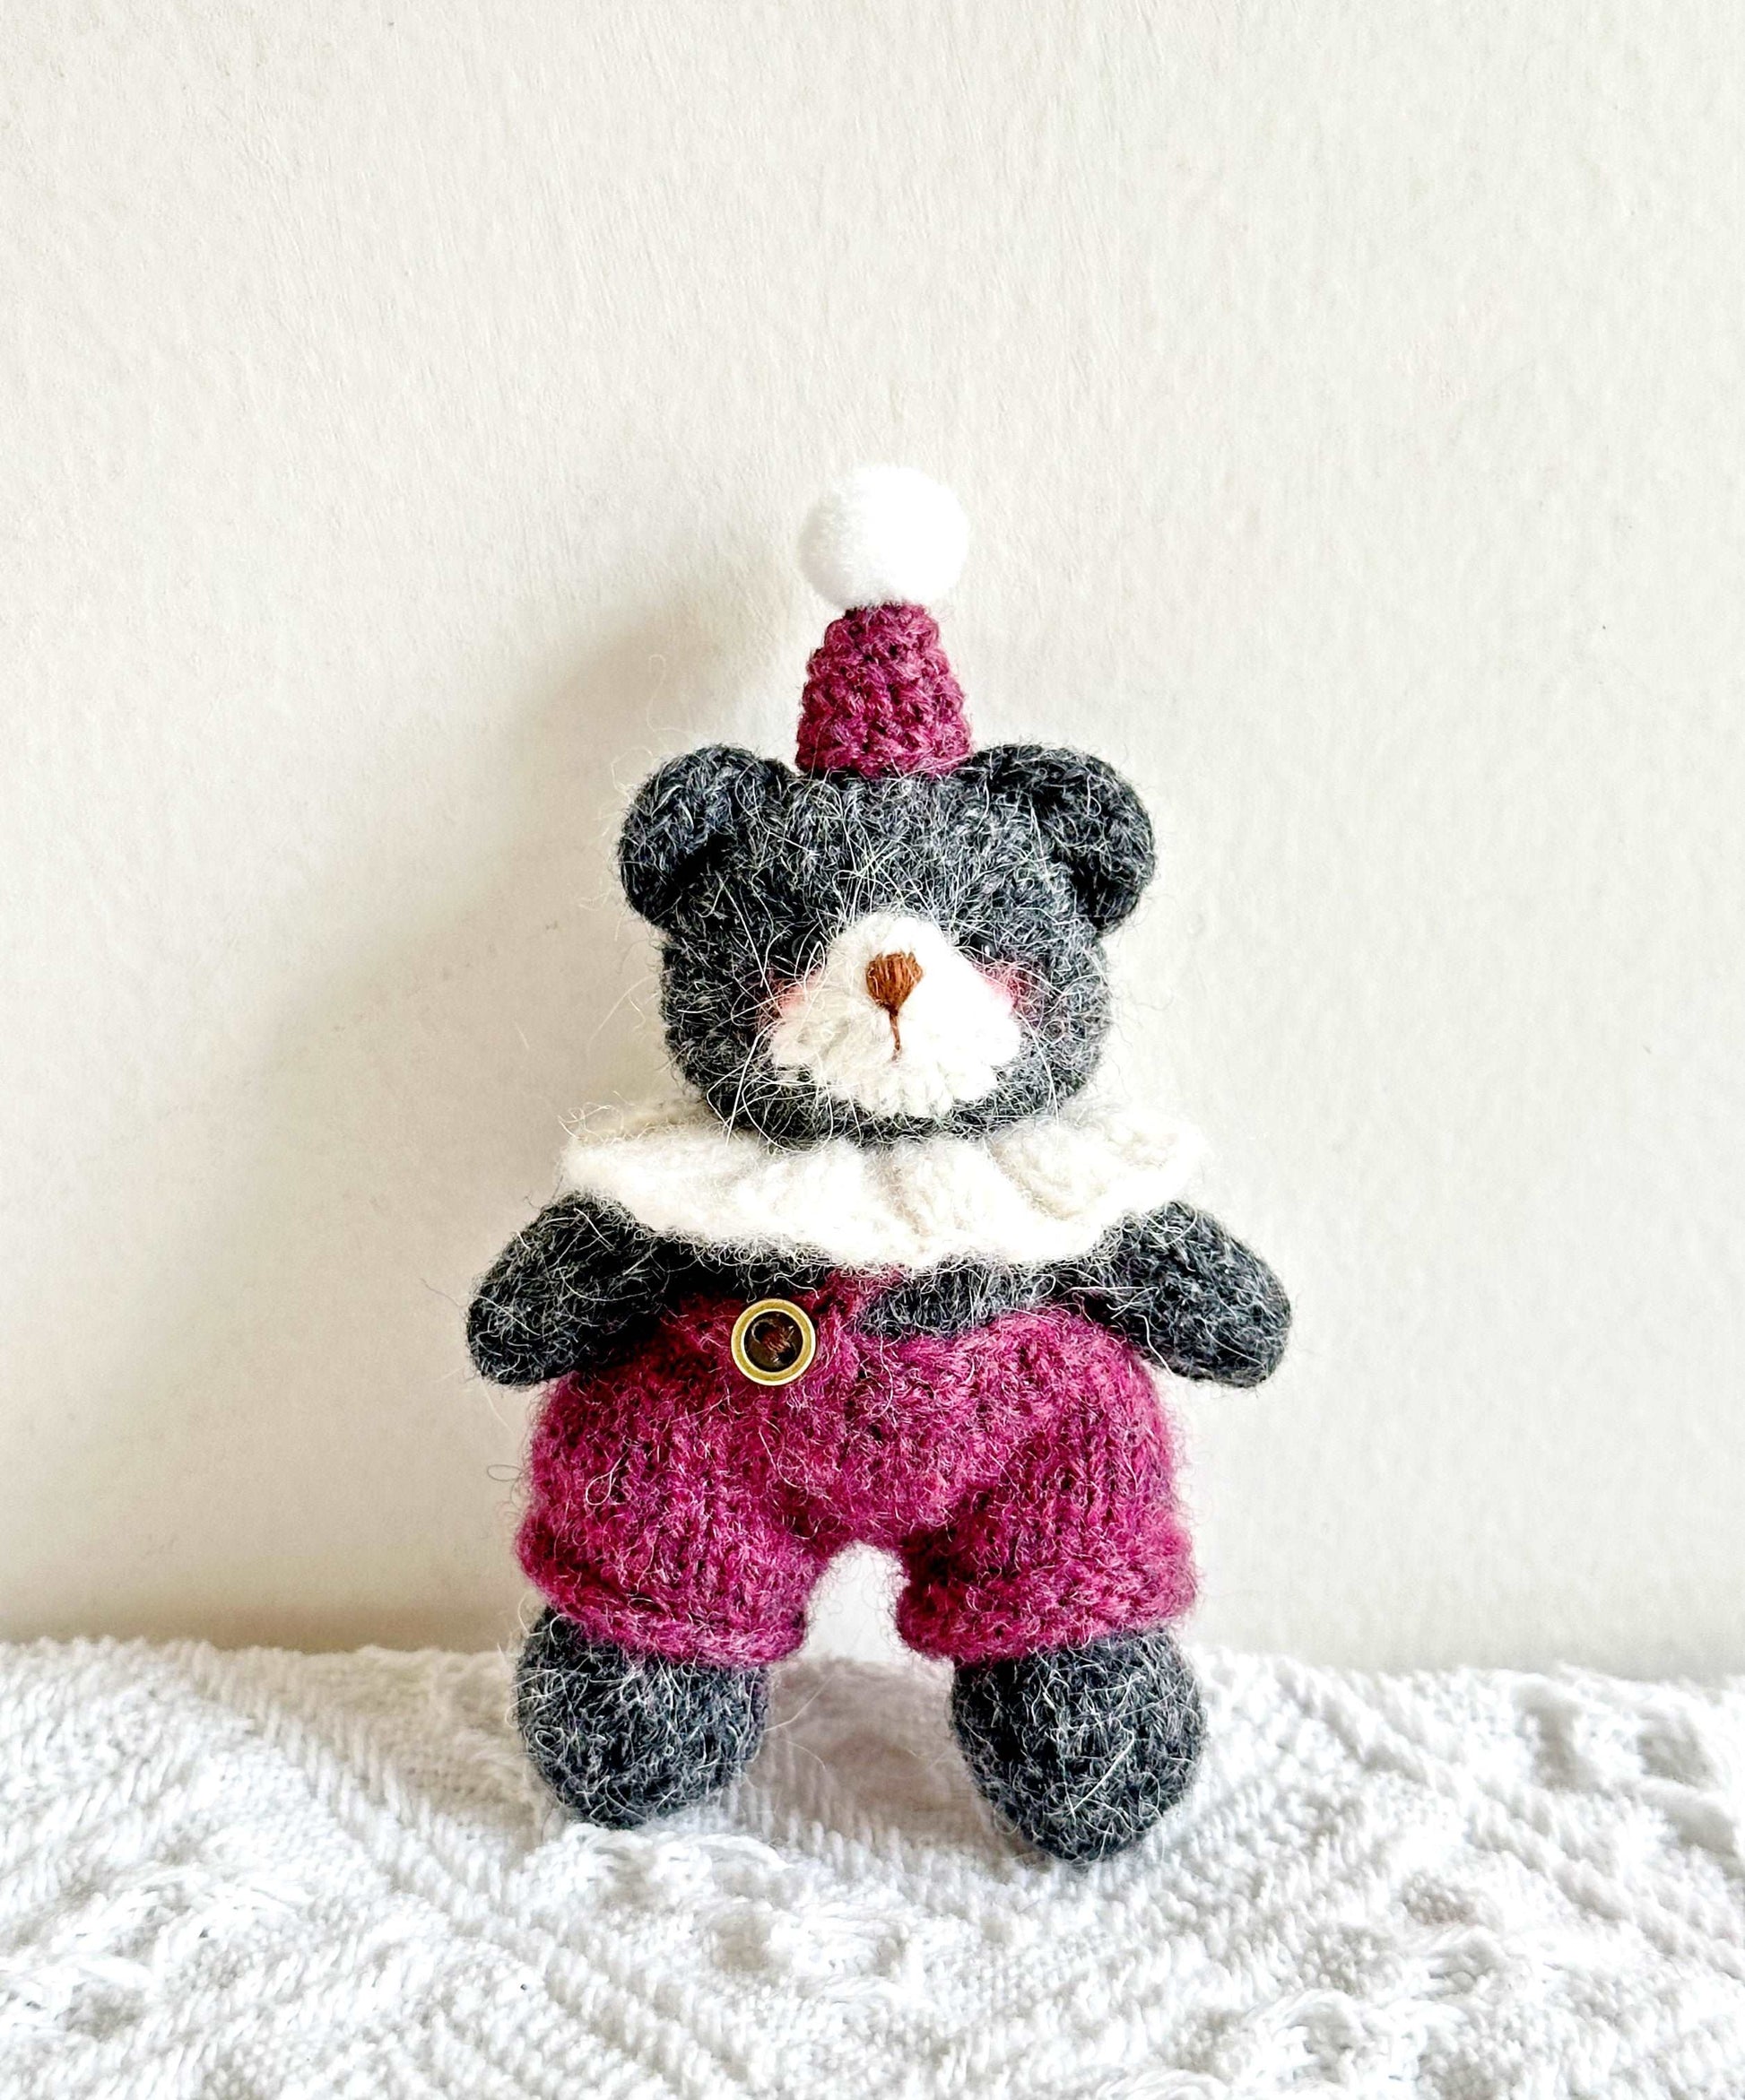 Delightful Crochet Teddy Bear Figurine as Gift or Décor